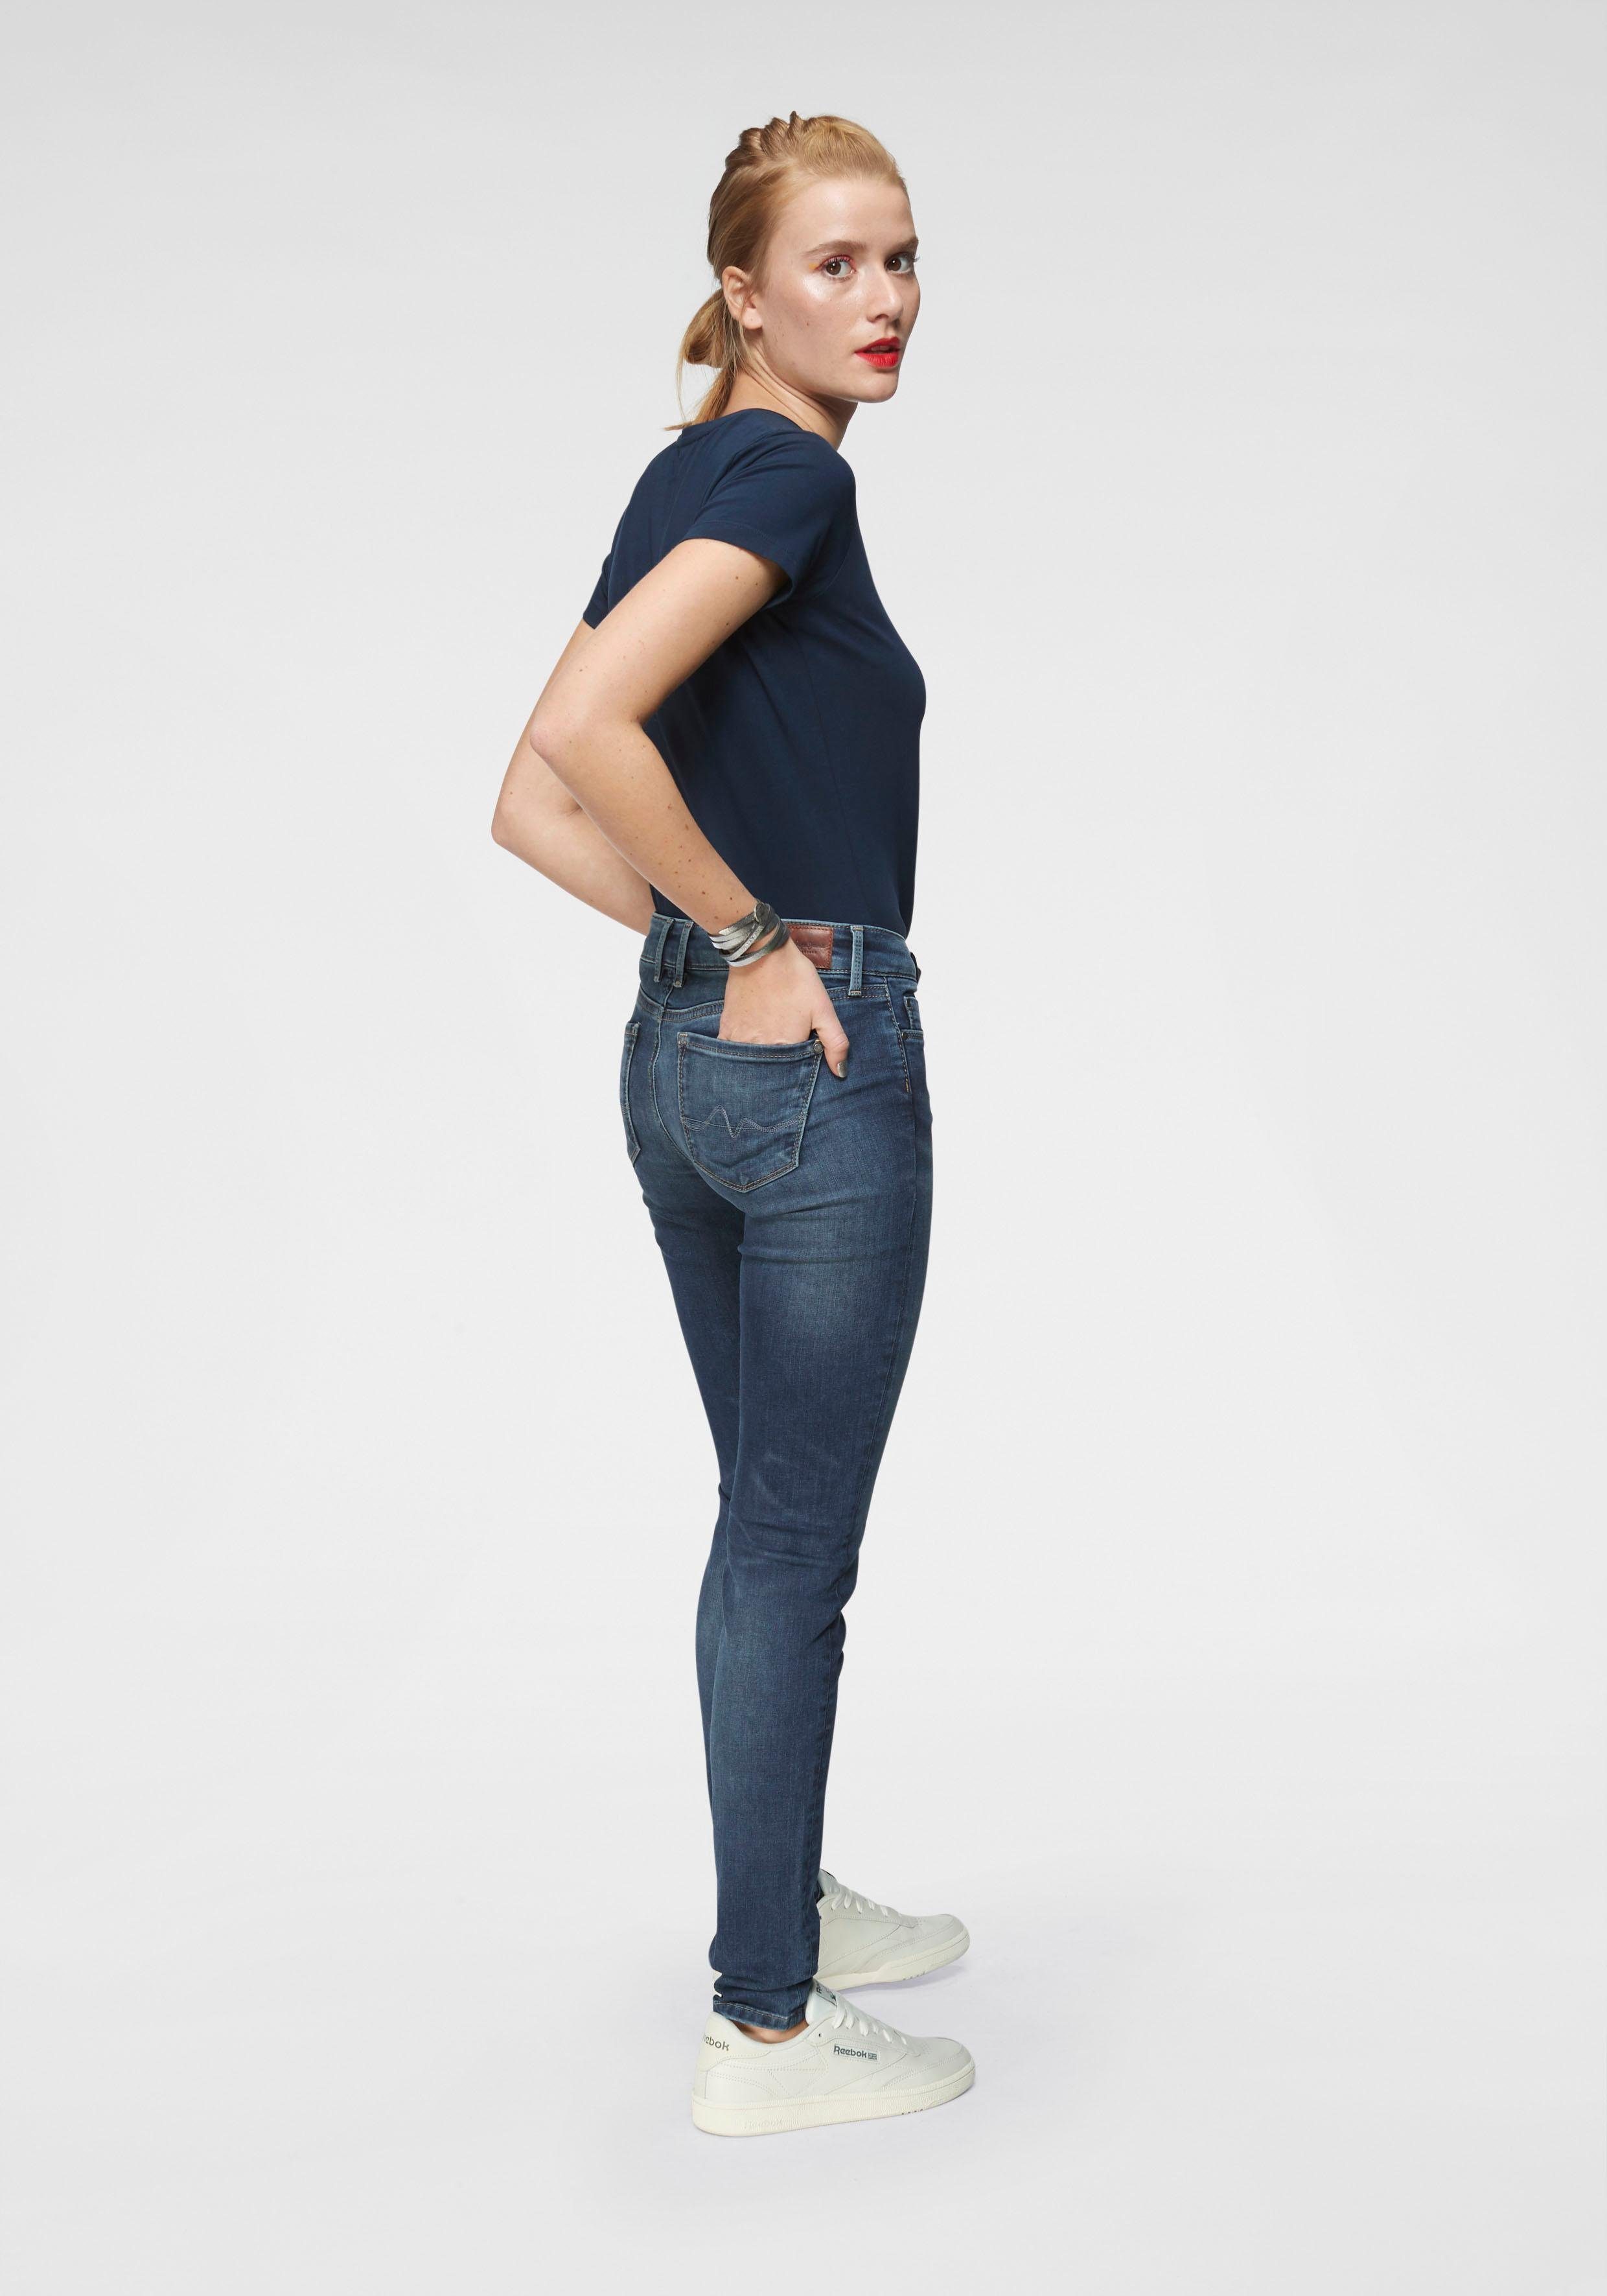 Jeans stretch Stretch-Anteil 1-Knopf Bund und Pepe classic Z63 im SOHO 5-Pocket-Stil Skinny-fit-Jeans mit